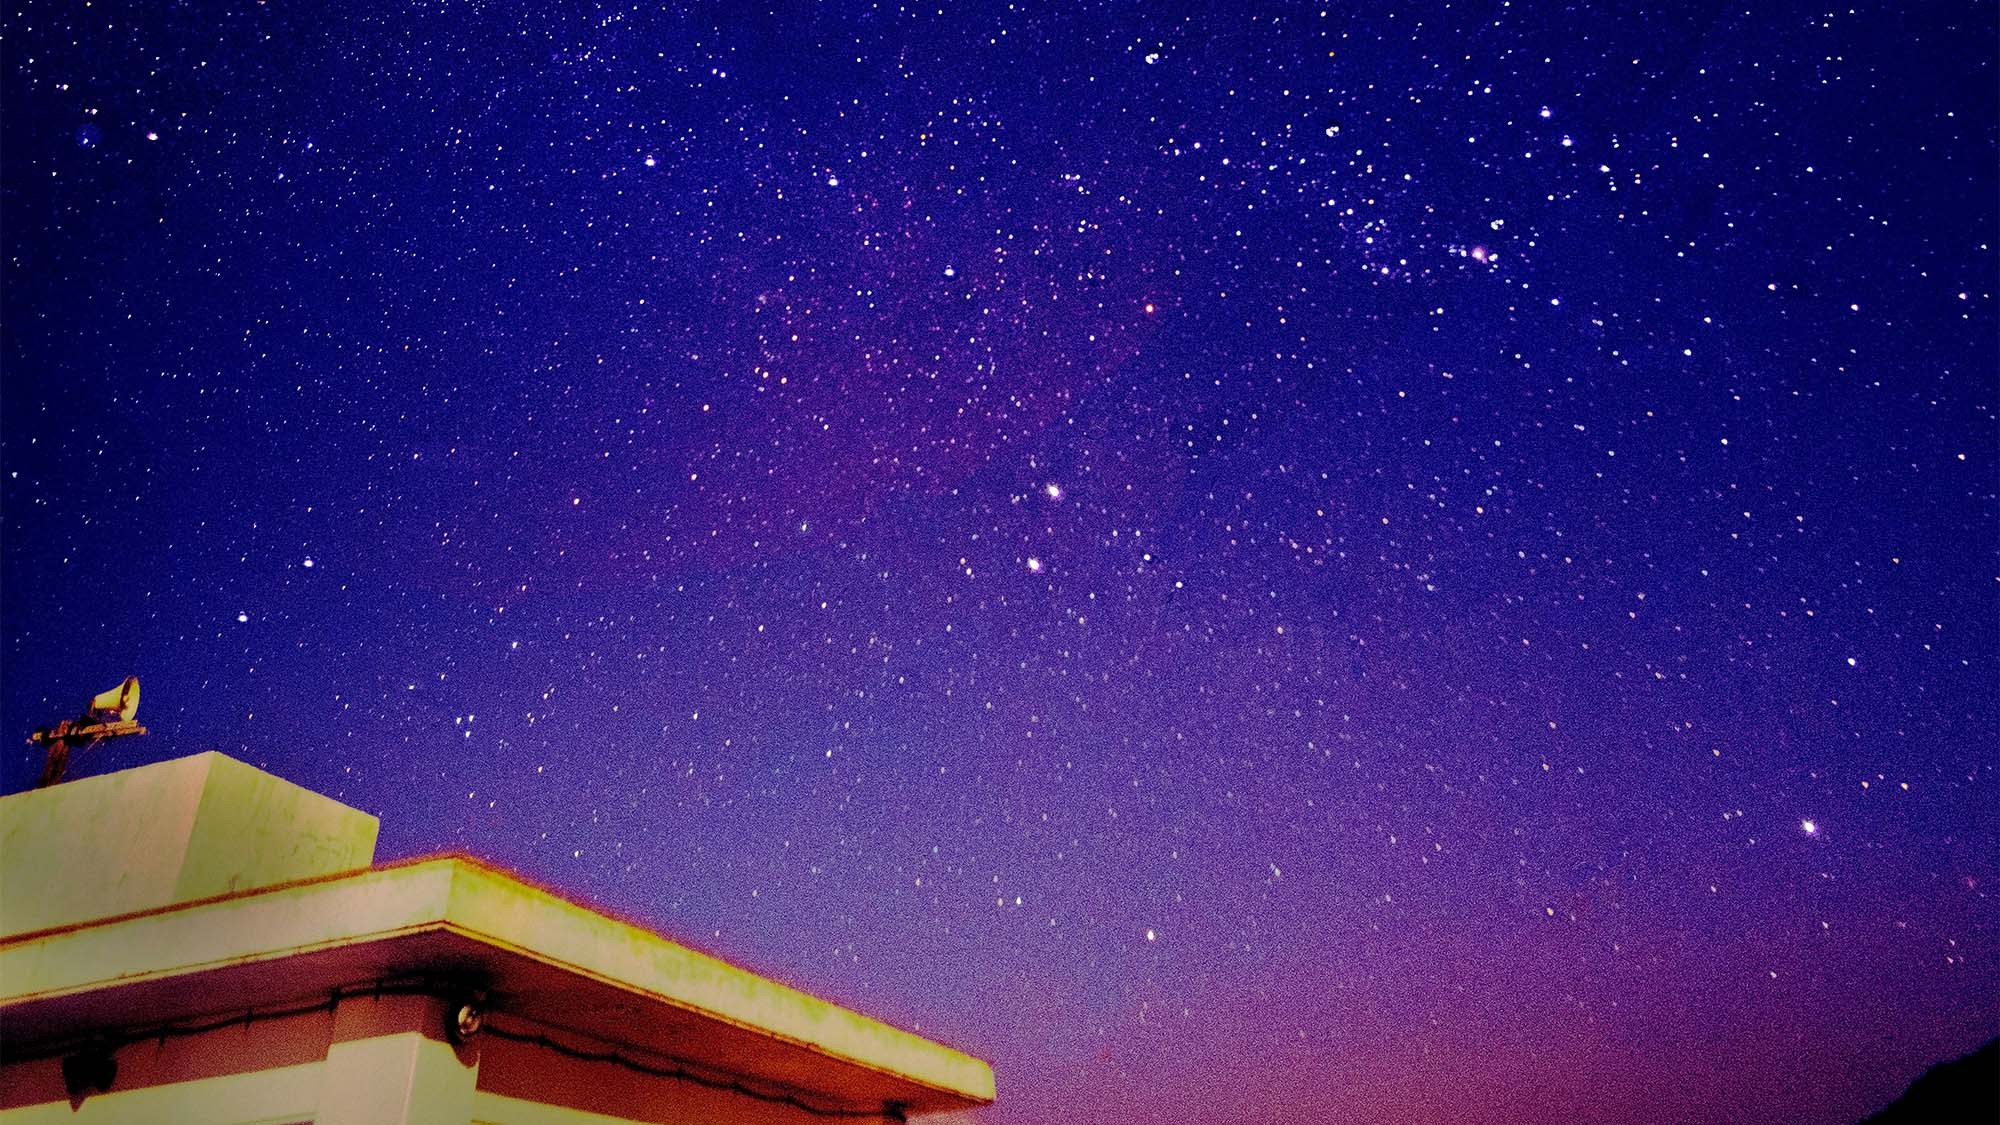 ・屋上から見上げる星空星立の集落には人口の明りがほとんどないので満天の星空が見られます